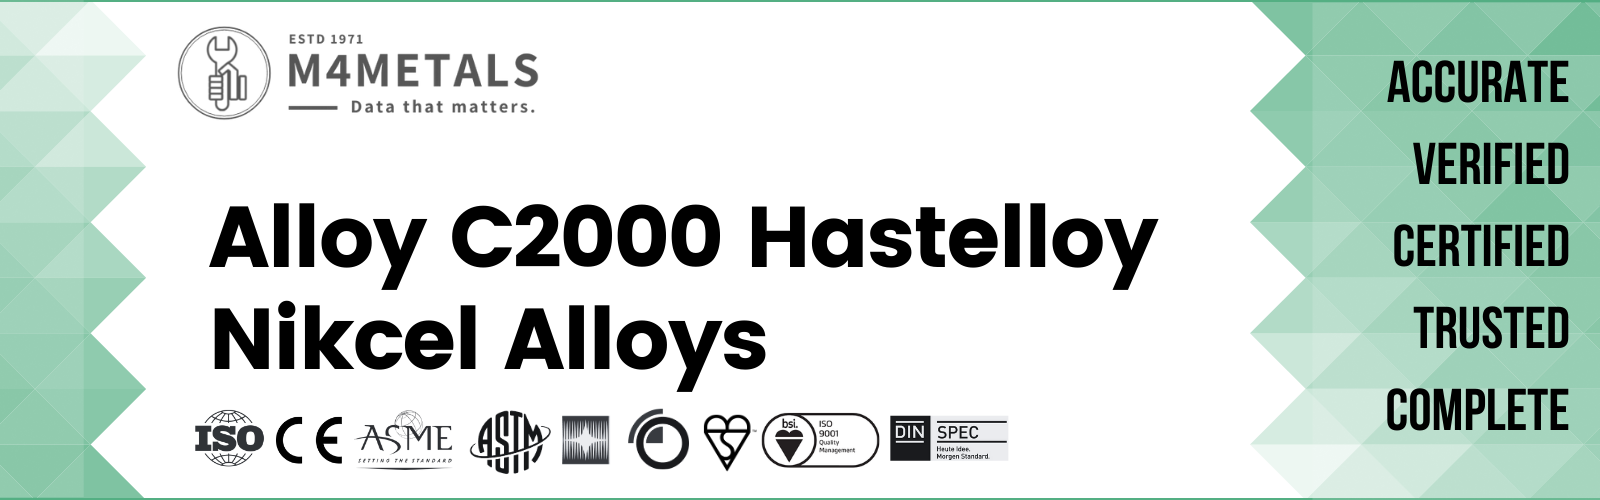 Hastelloy Alloy C2000